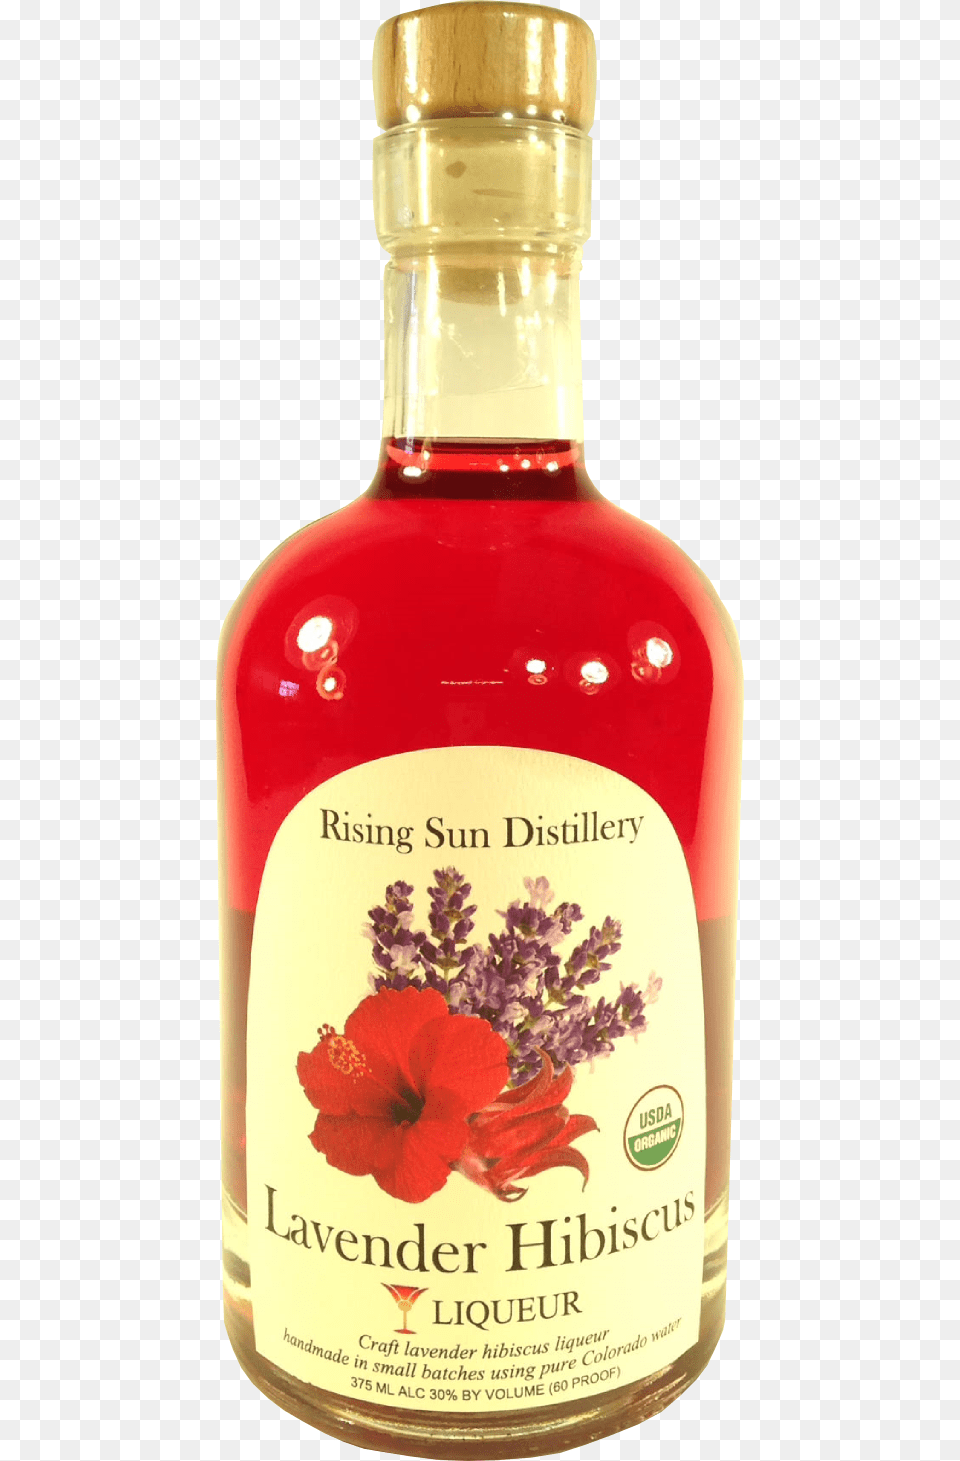 Lavender Hibiscus Liqueur, Flower, Plant, Alcohol, Beverage Free Transparent Png